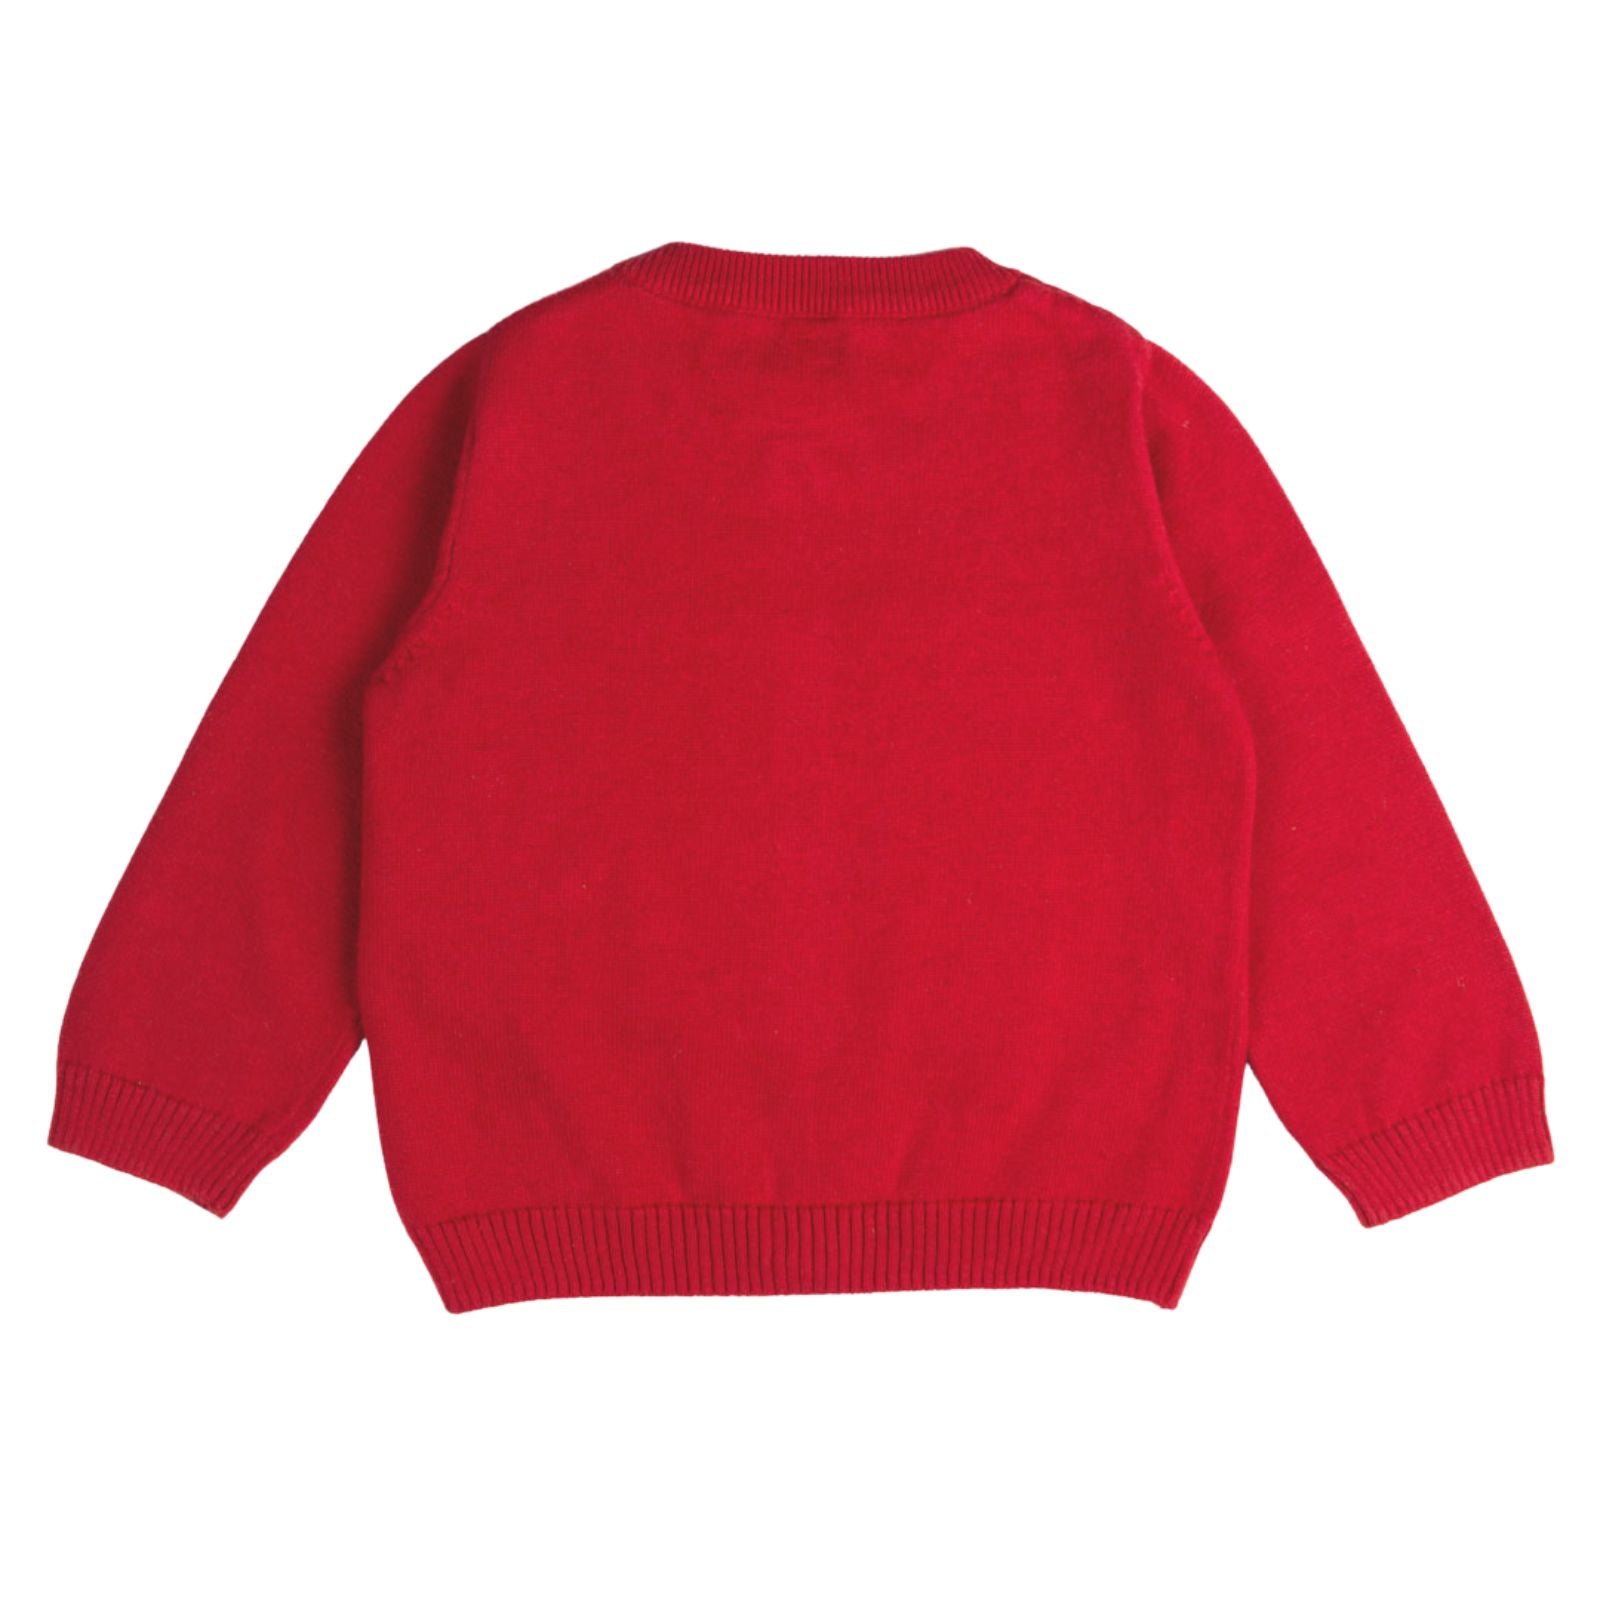 Wishful Santa Sweater - Deep Red